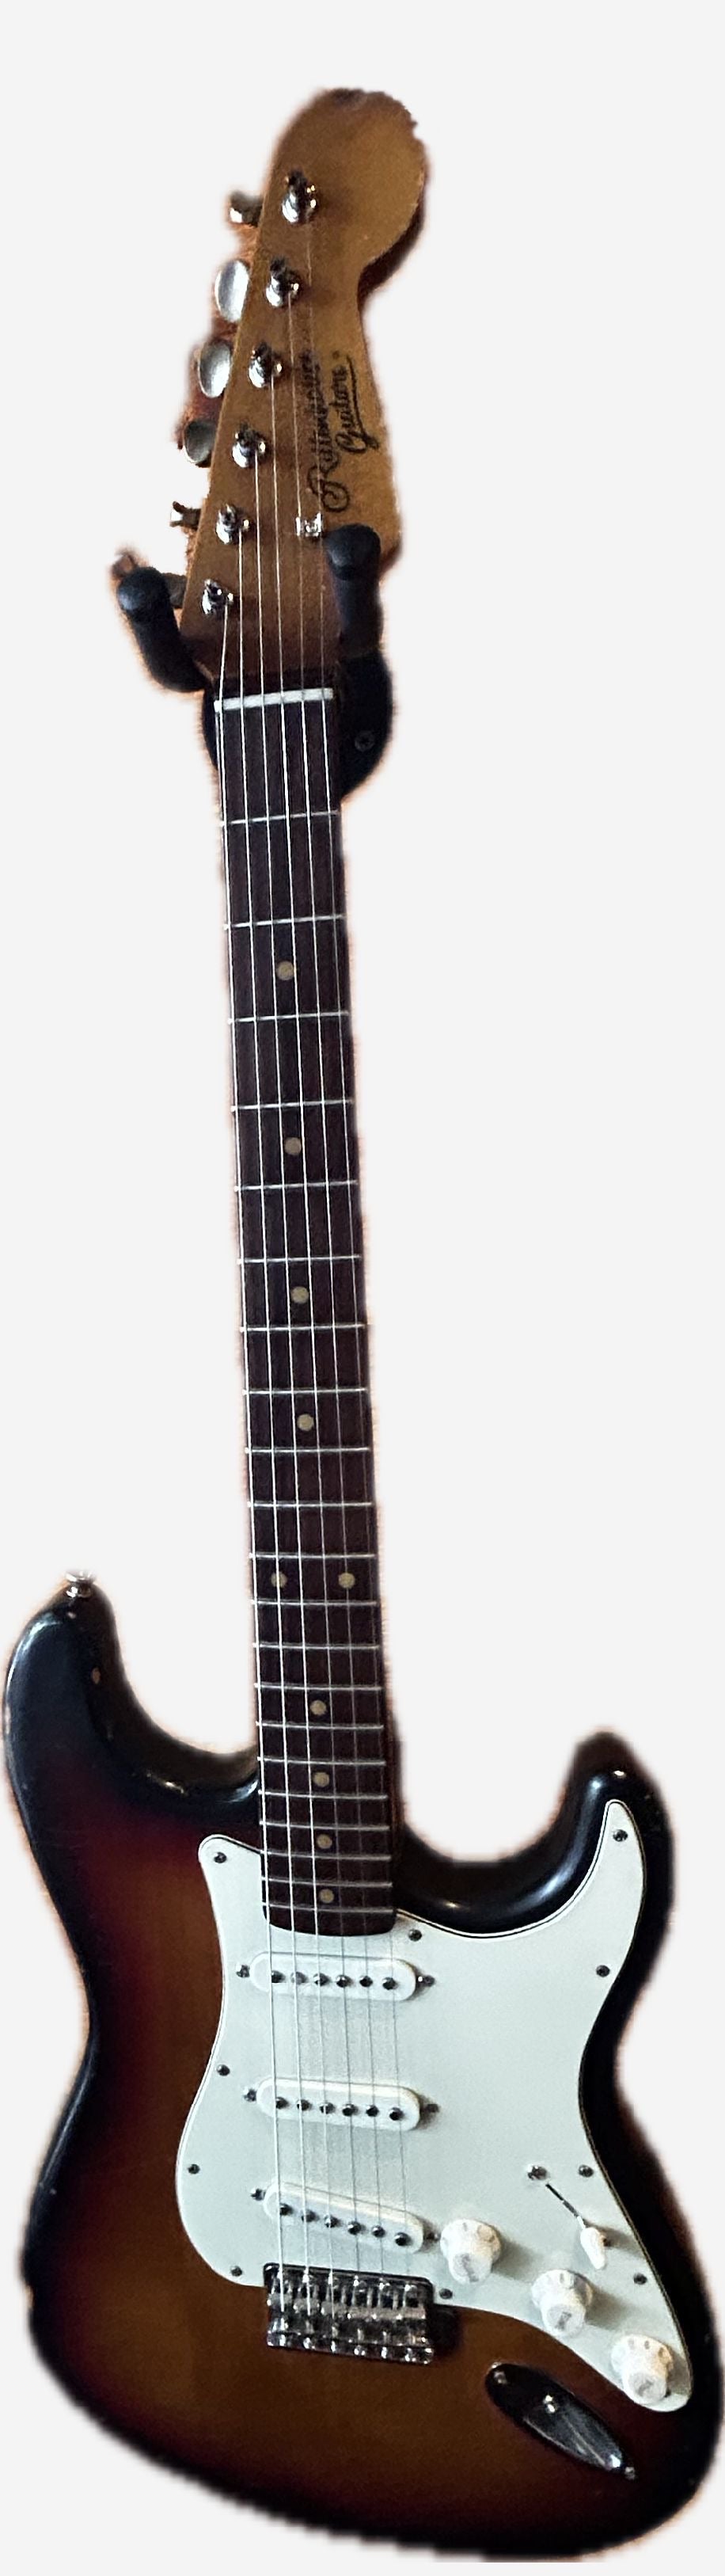 Rittenhouse Guitars S-model sunburst